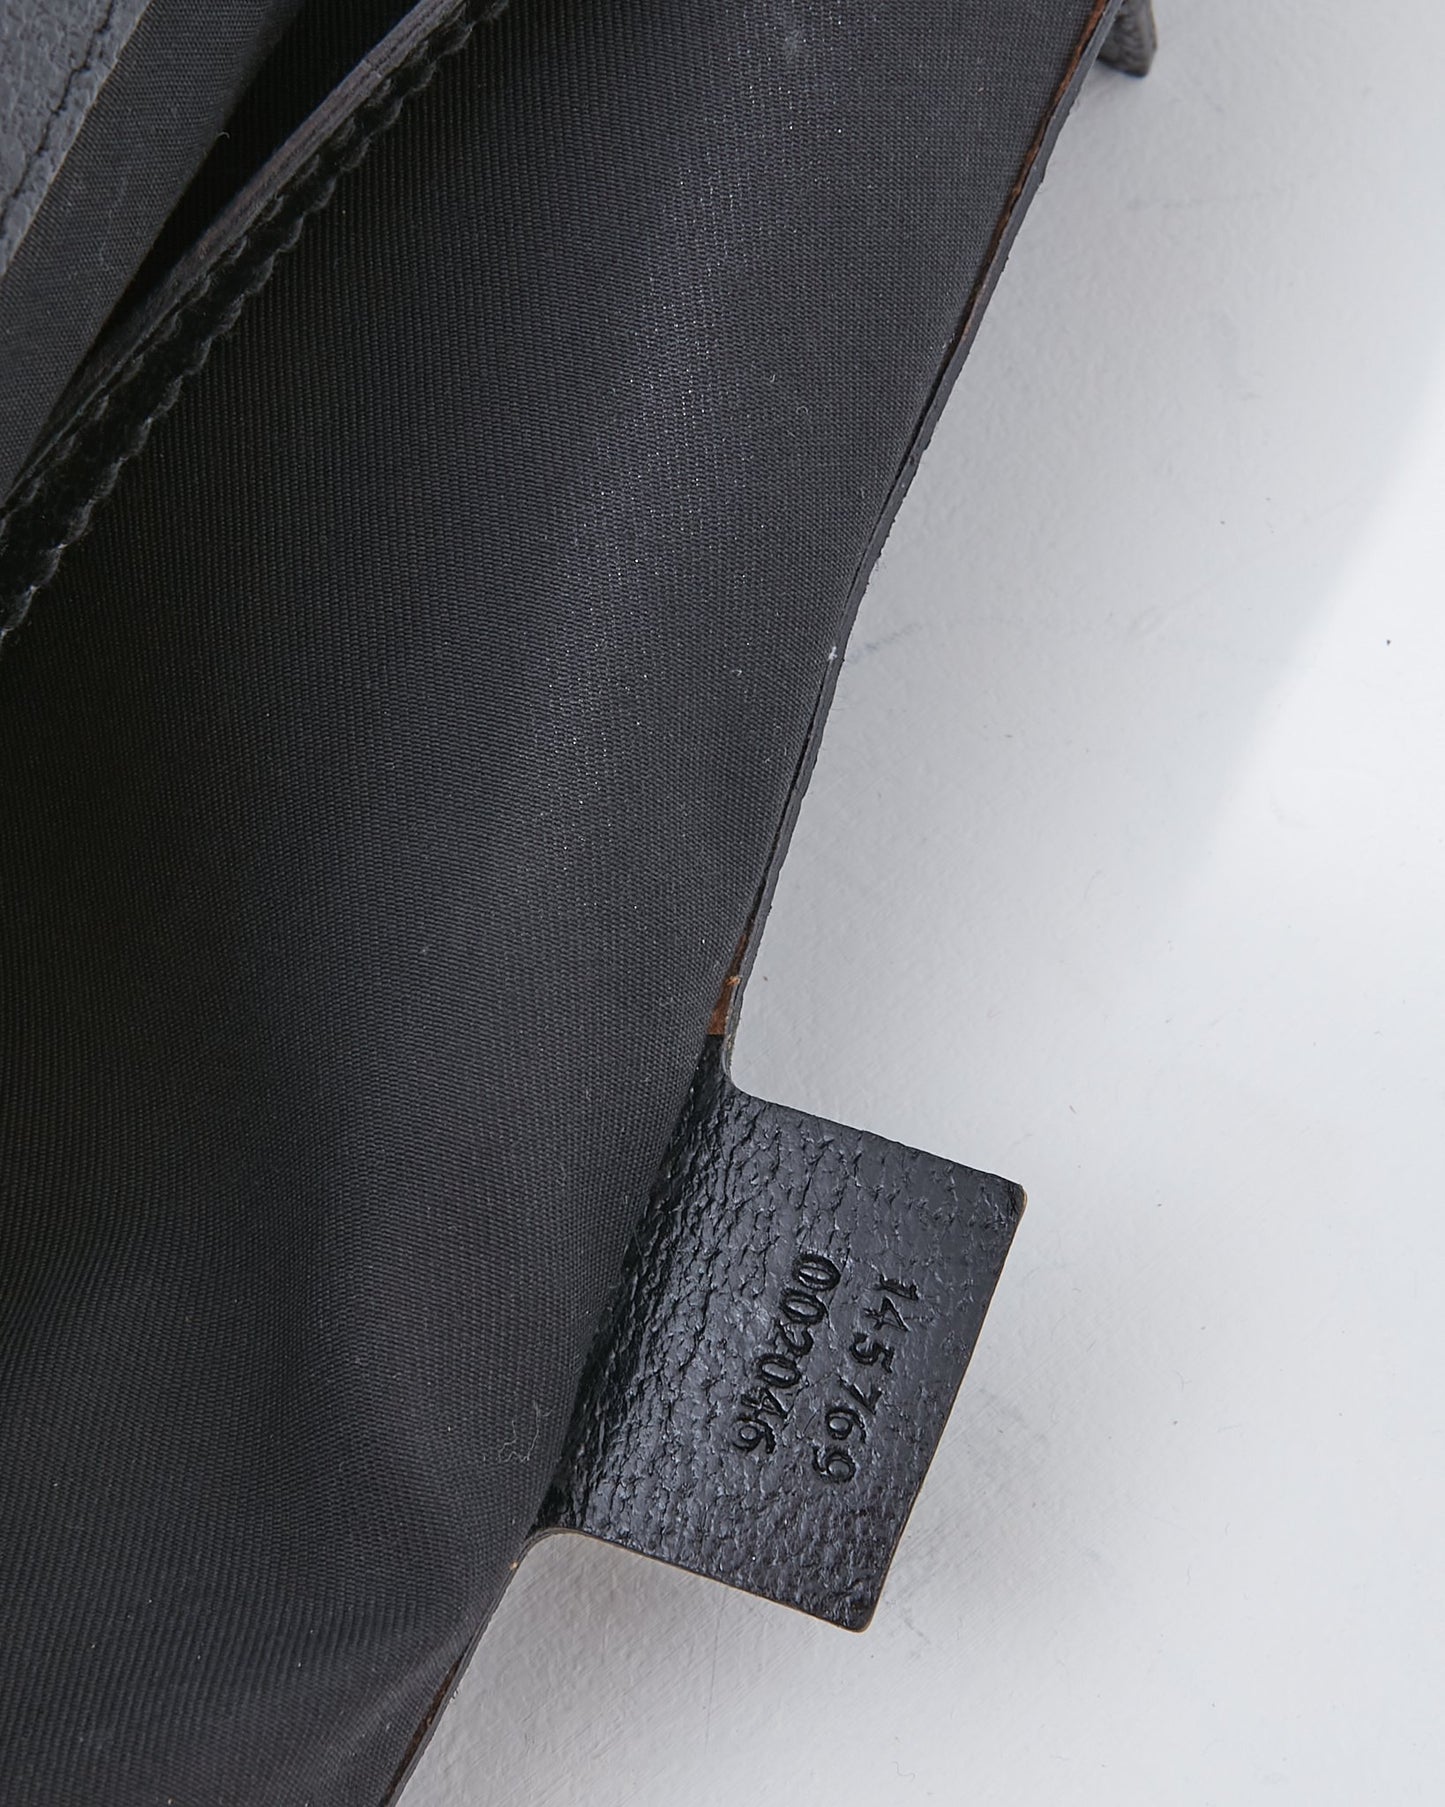 Gucci Black Canvas Horsebit Print Tote Bag